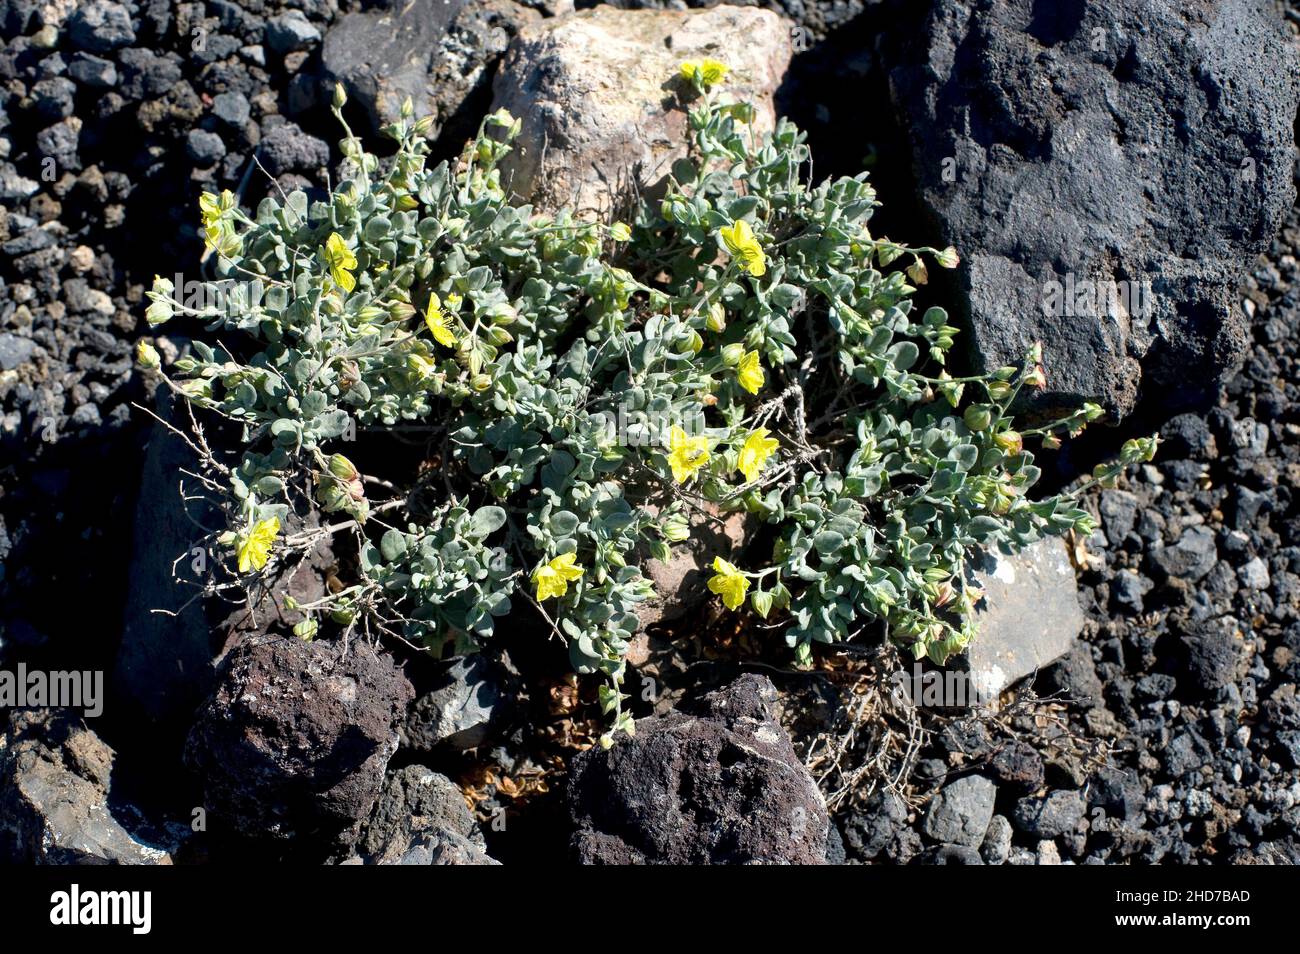 Turmero o jarilla Turmera (Helianthemum canariense) è un arbusto prostrato originario delle Isole Canarie e dell'Africa nordoccidentale. Questa foto è stata scattata Foto Stock